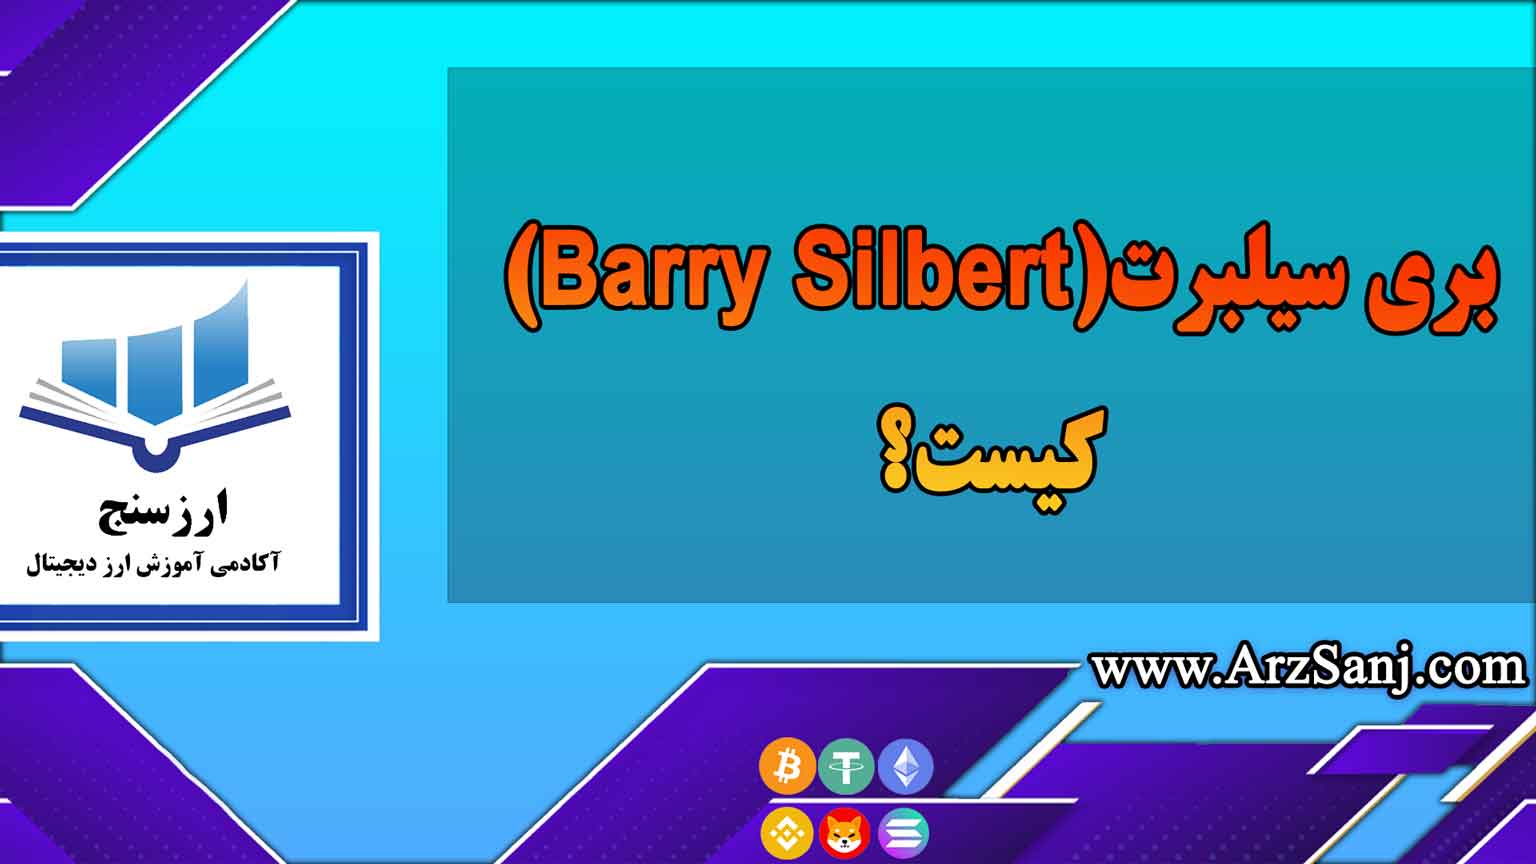 بری سیلبرت(Barry Silbert) کیست؟